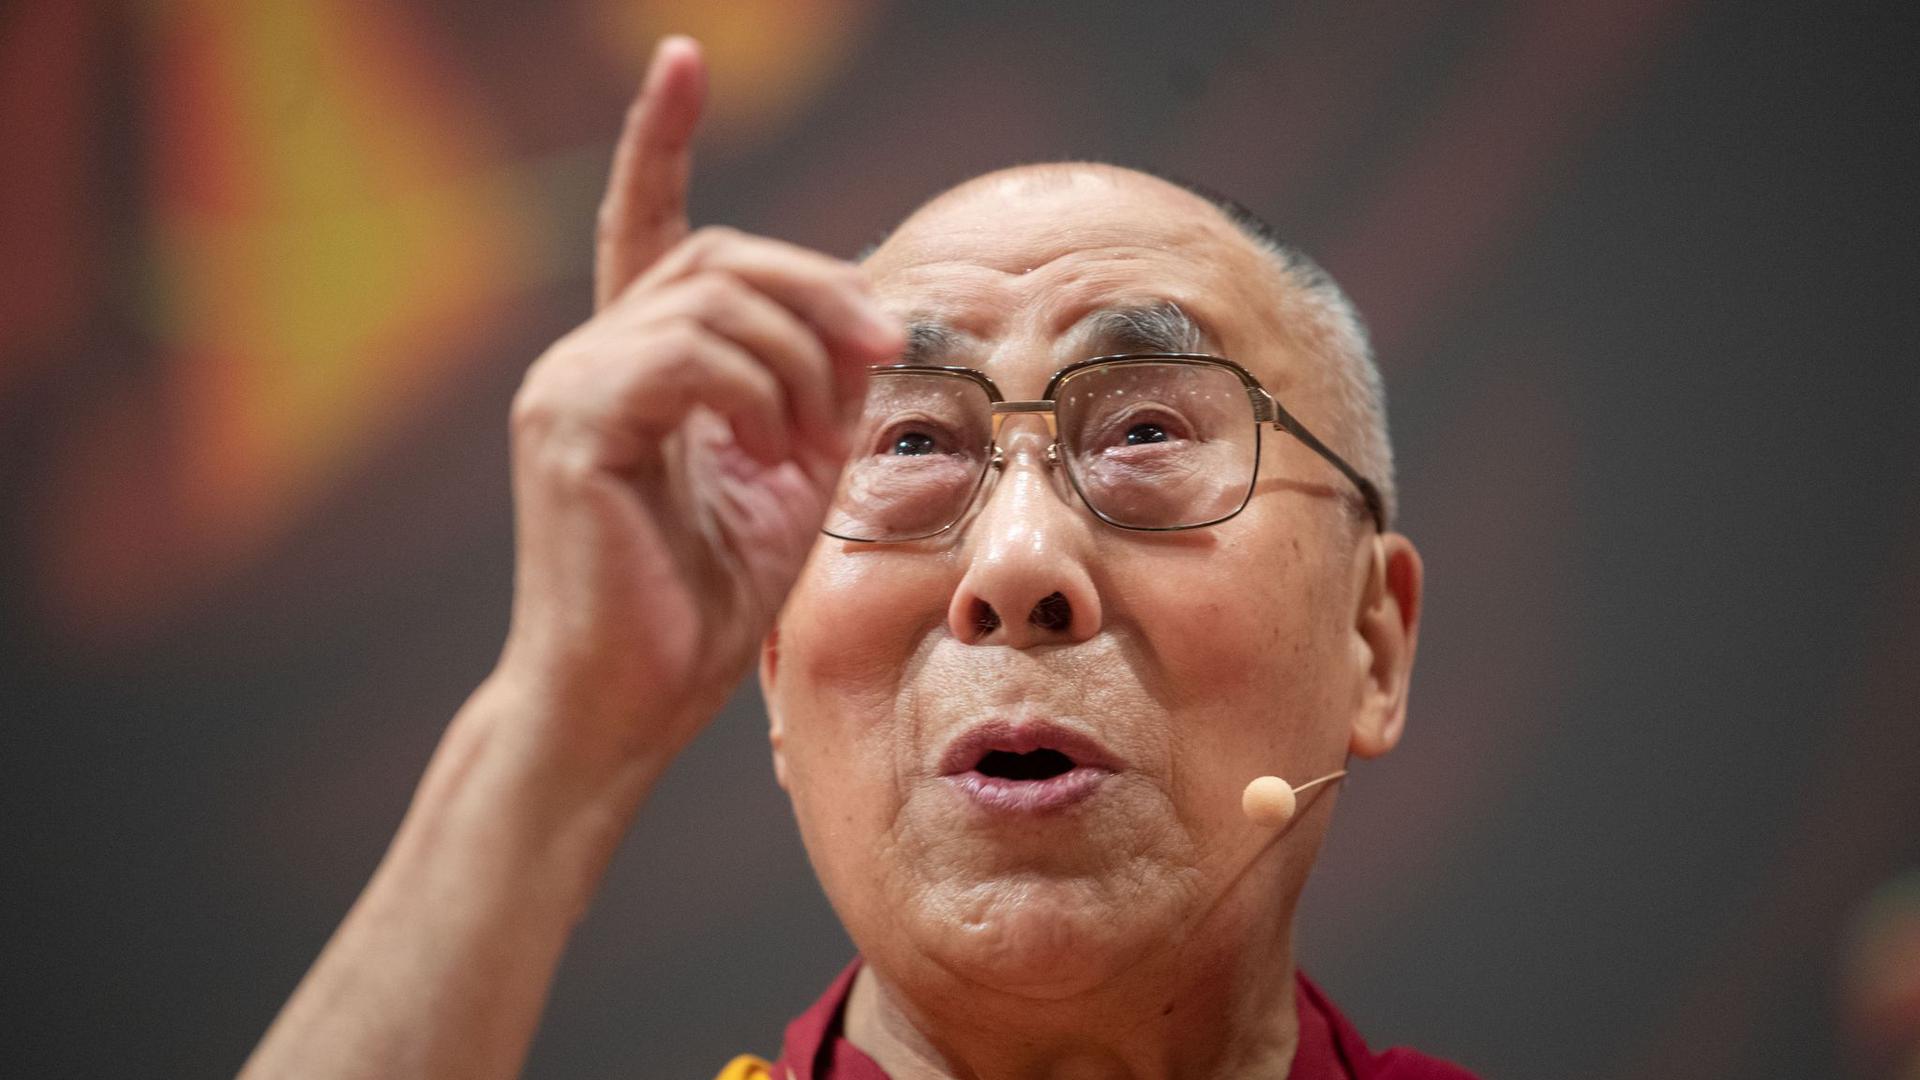 Der Dalai Lama, das geistige Oberhaupt der Tibeter, wird 85.